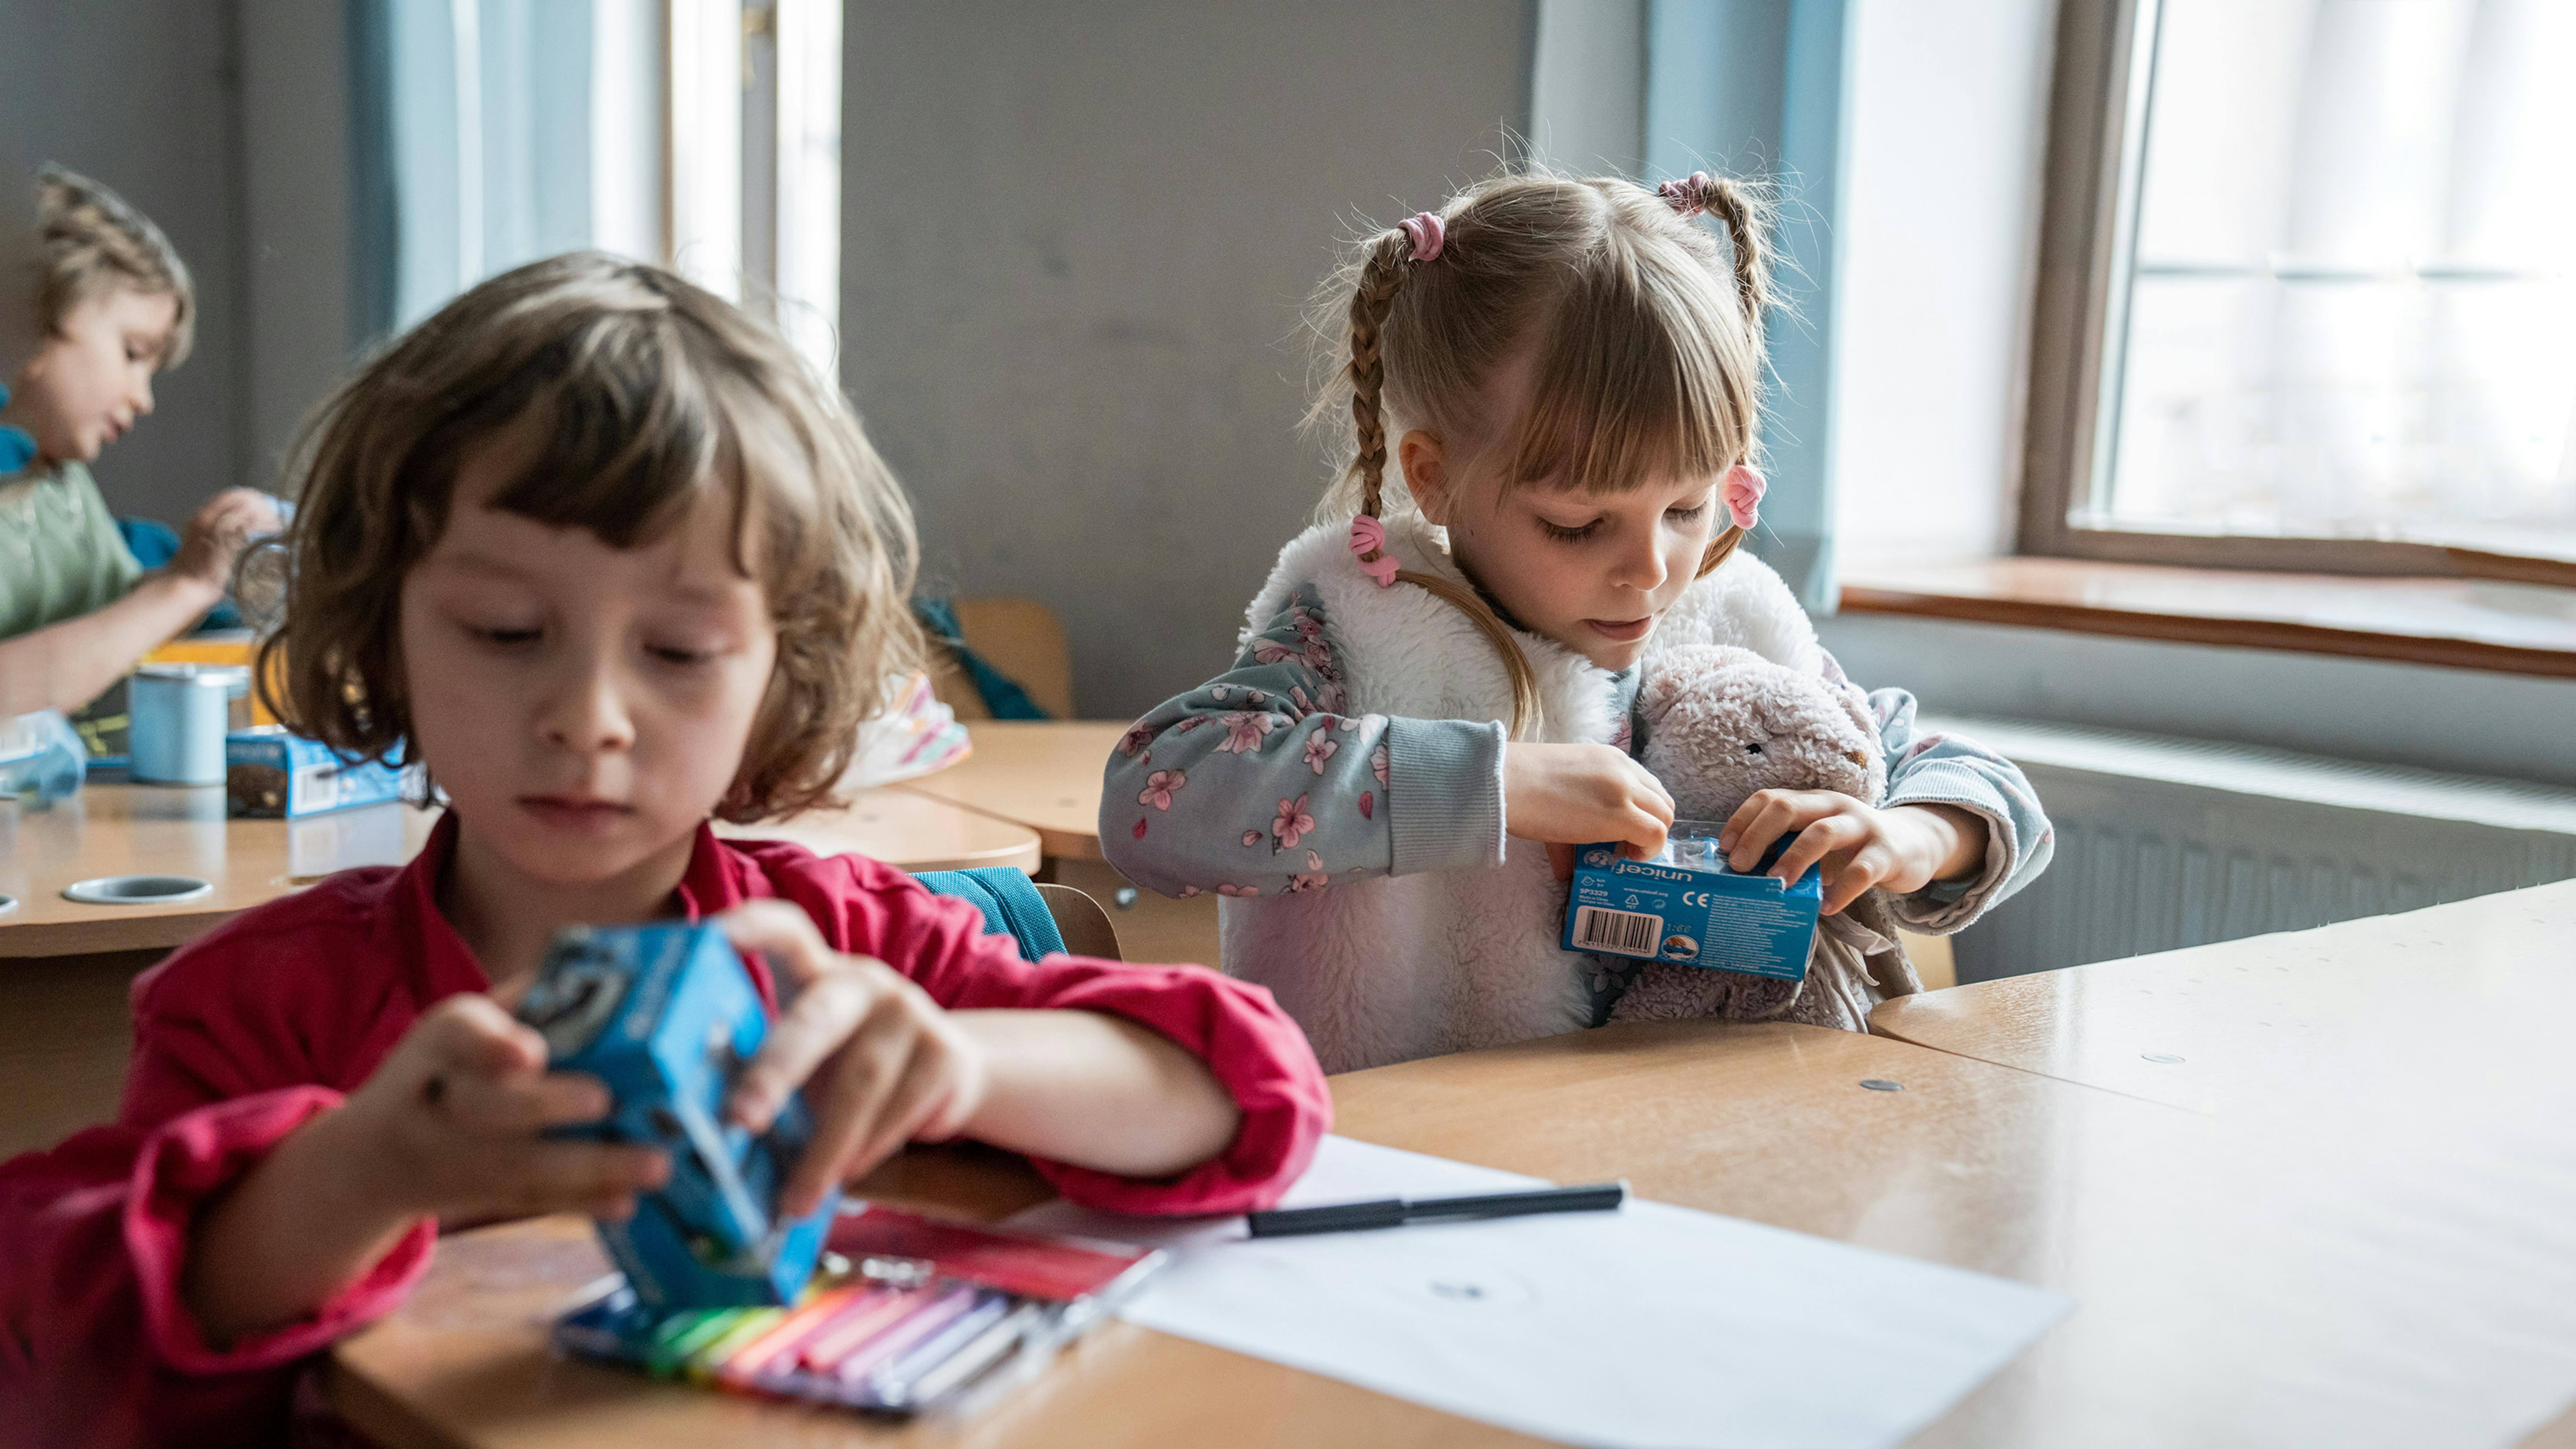 Romania - I bambini rifugiati ucraini hanno ricevuto macchinine giocattolo dall'UNICEF e stanno giocando con loro durante le vacanze scolastiche.